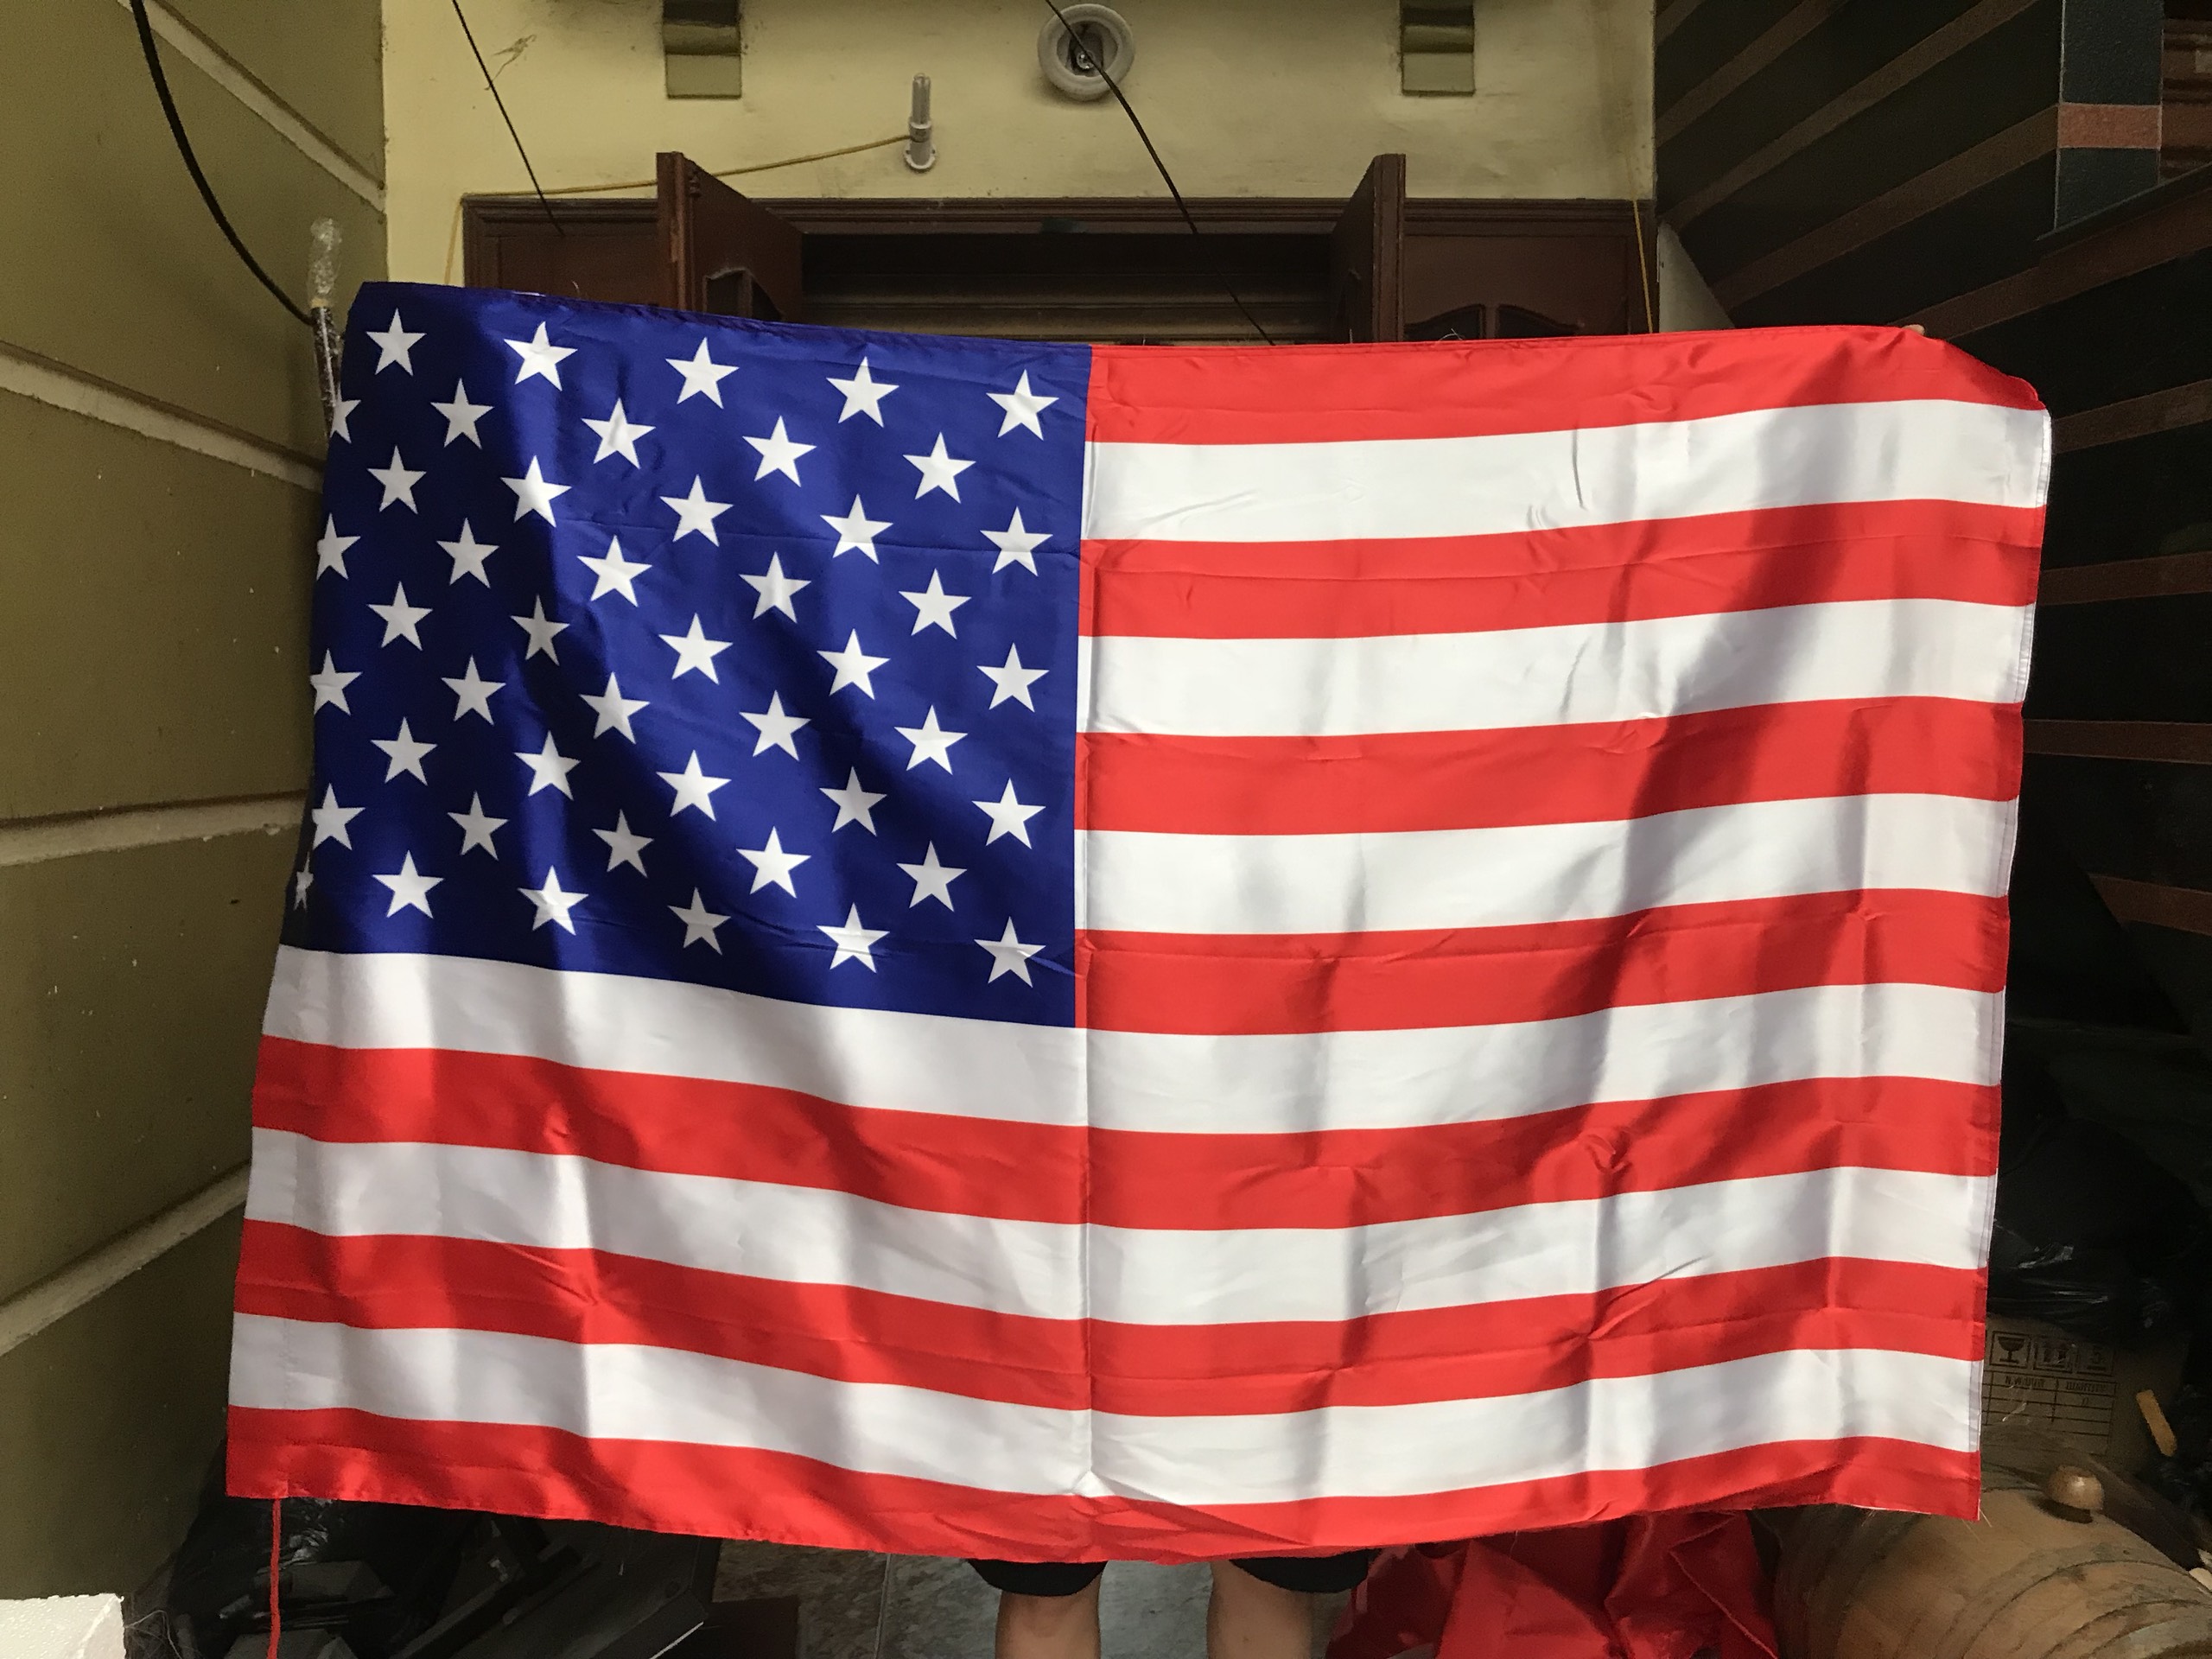 In cờ nước Mỹ mới nhất 2024: Mới nhất năm 2024, Cờ nước Mỹ sẽ được in bằng công nghệ tiên tiến và hình thức đẹp mắt, đem lại cảm giác tự hào cho người dân. Với sự kết hợp giữa truyền thống và hiện đại, cờ phát huy được giá trị và ý nghĩa của nó trong đất nước Mỹ.